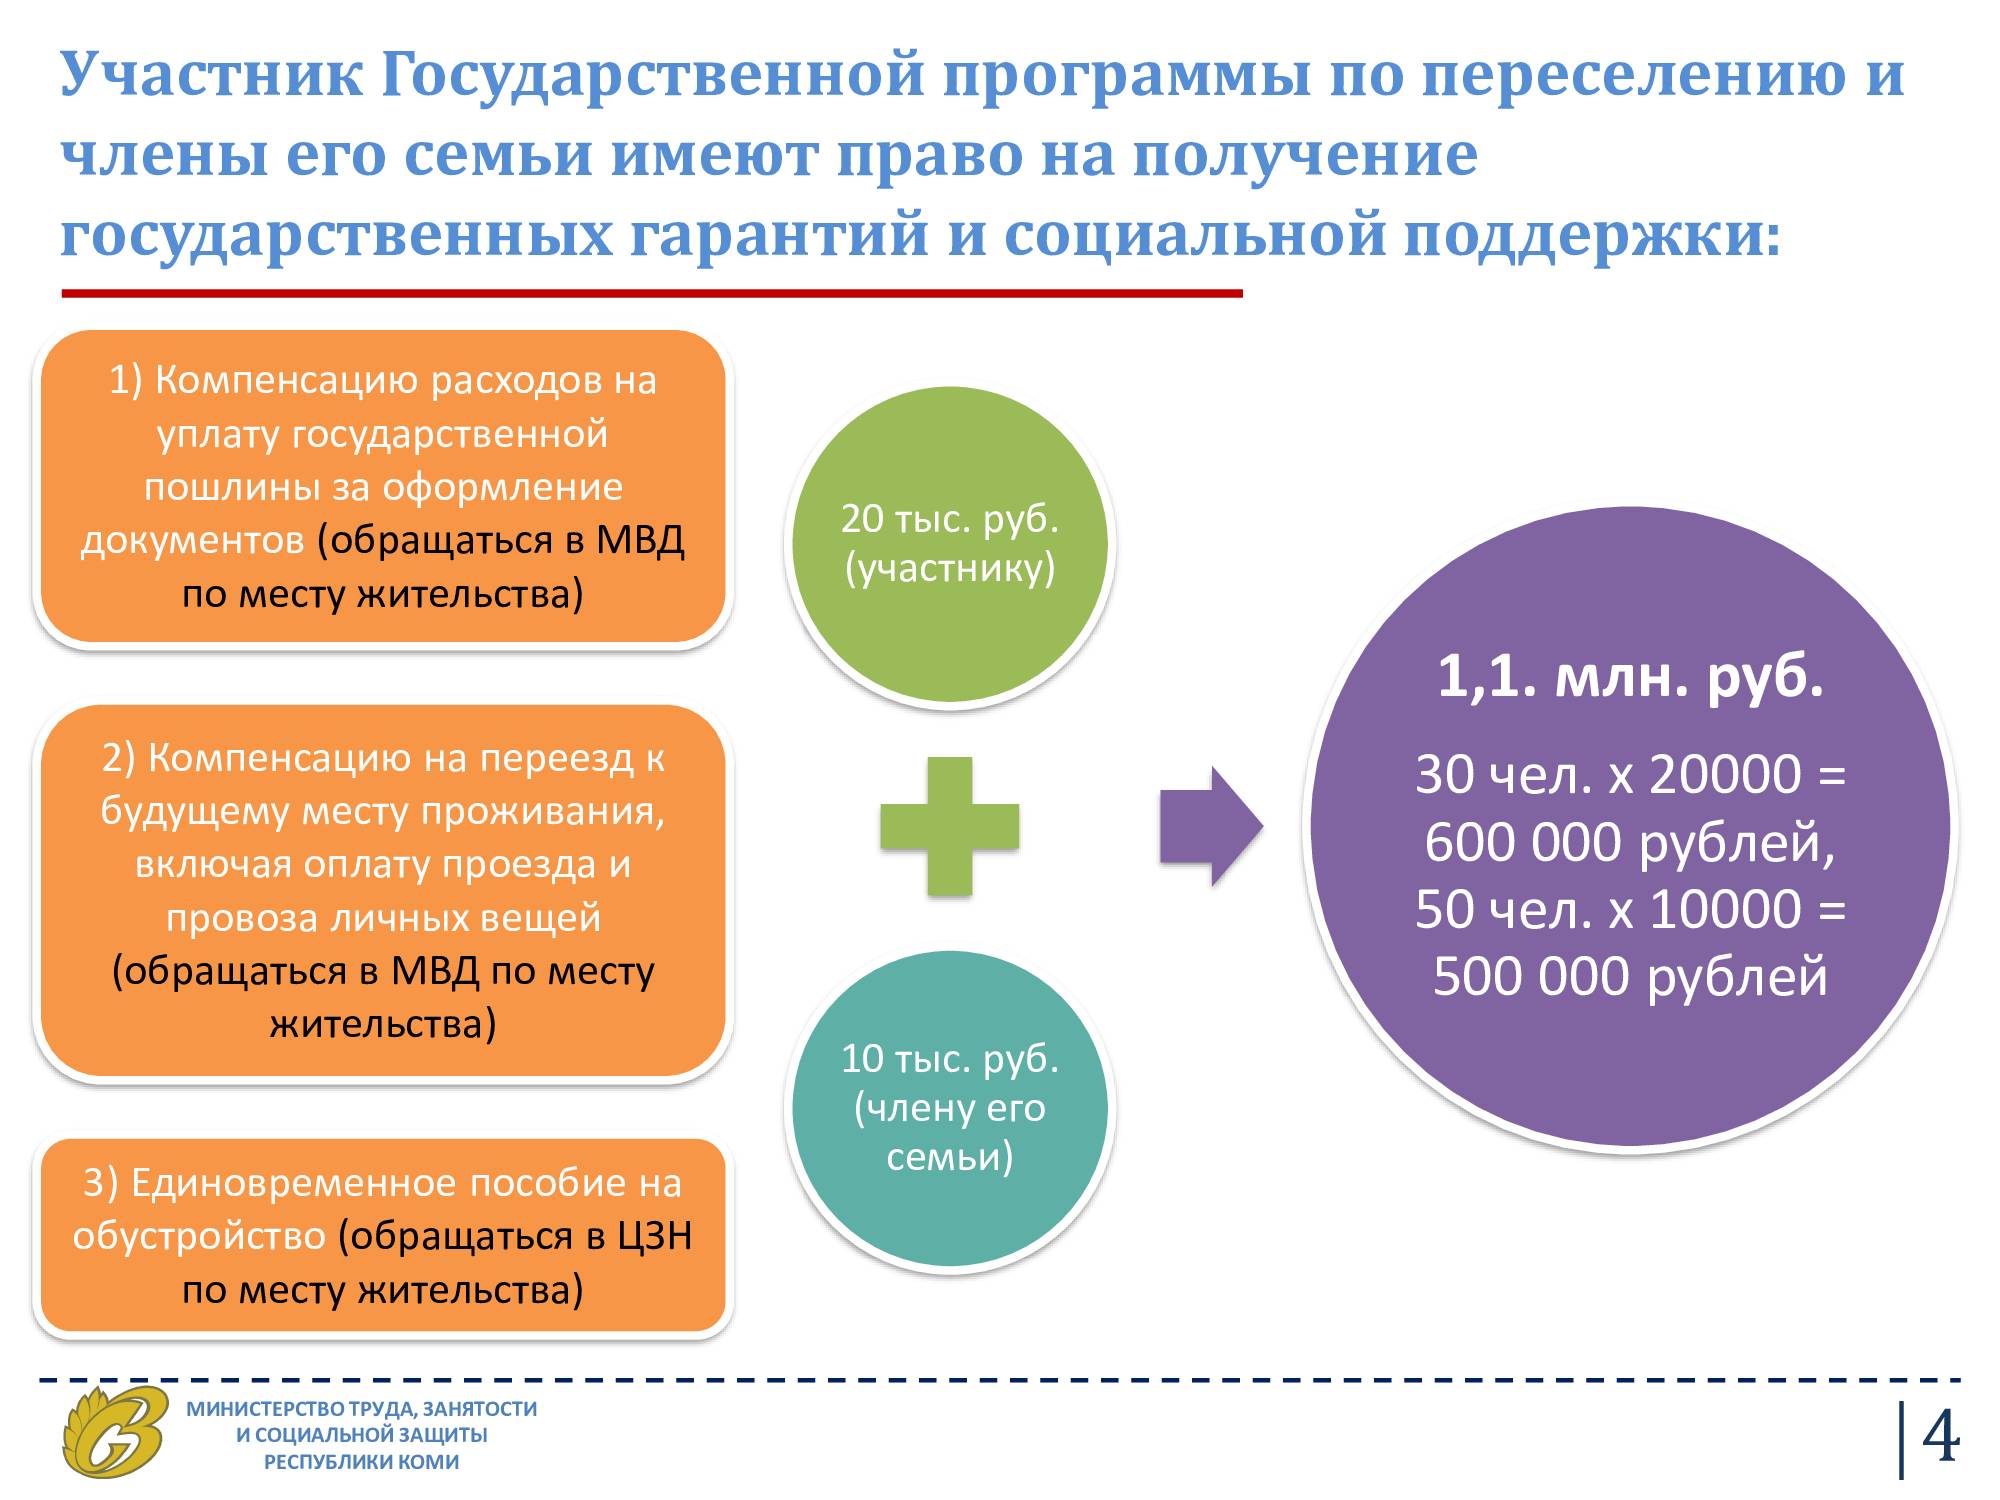 Программа переселения соотечественников в 2021 году в россию